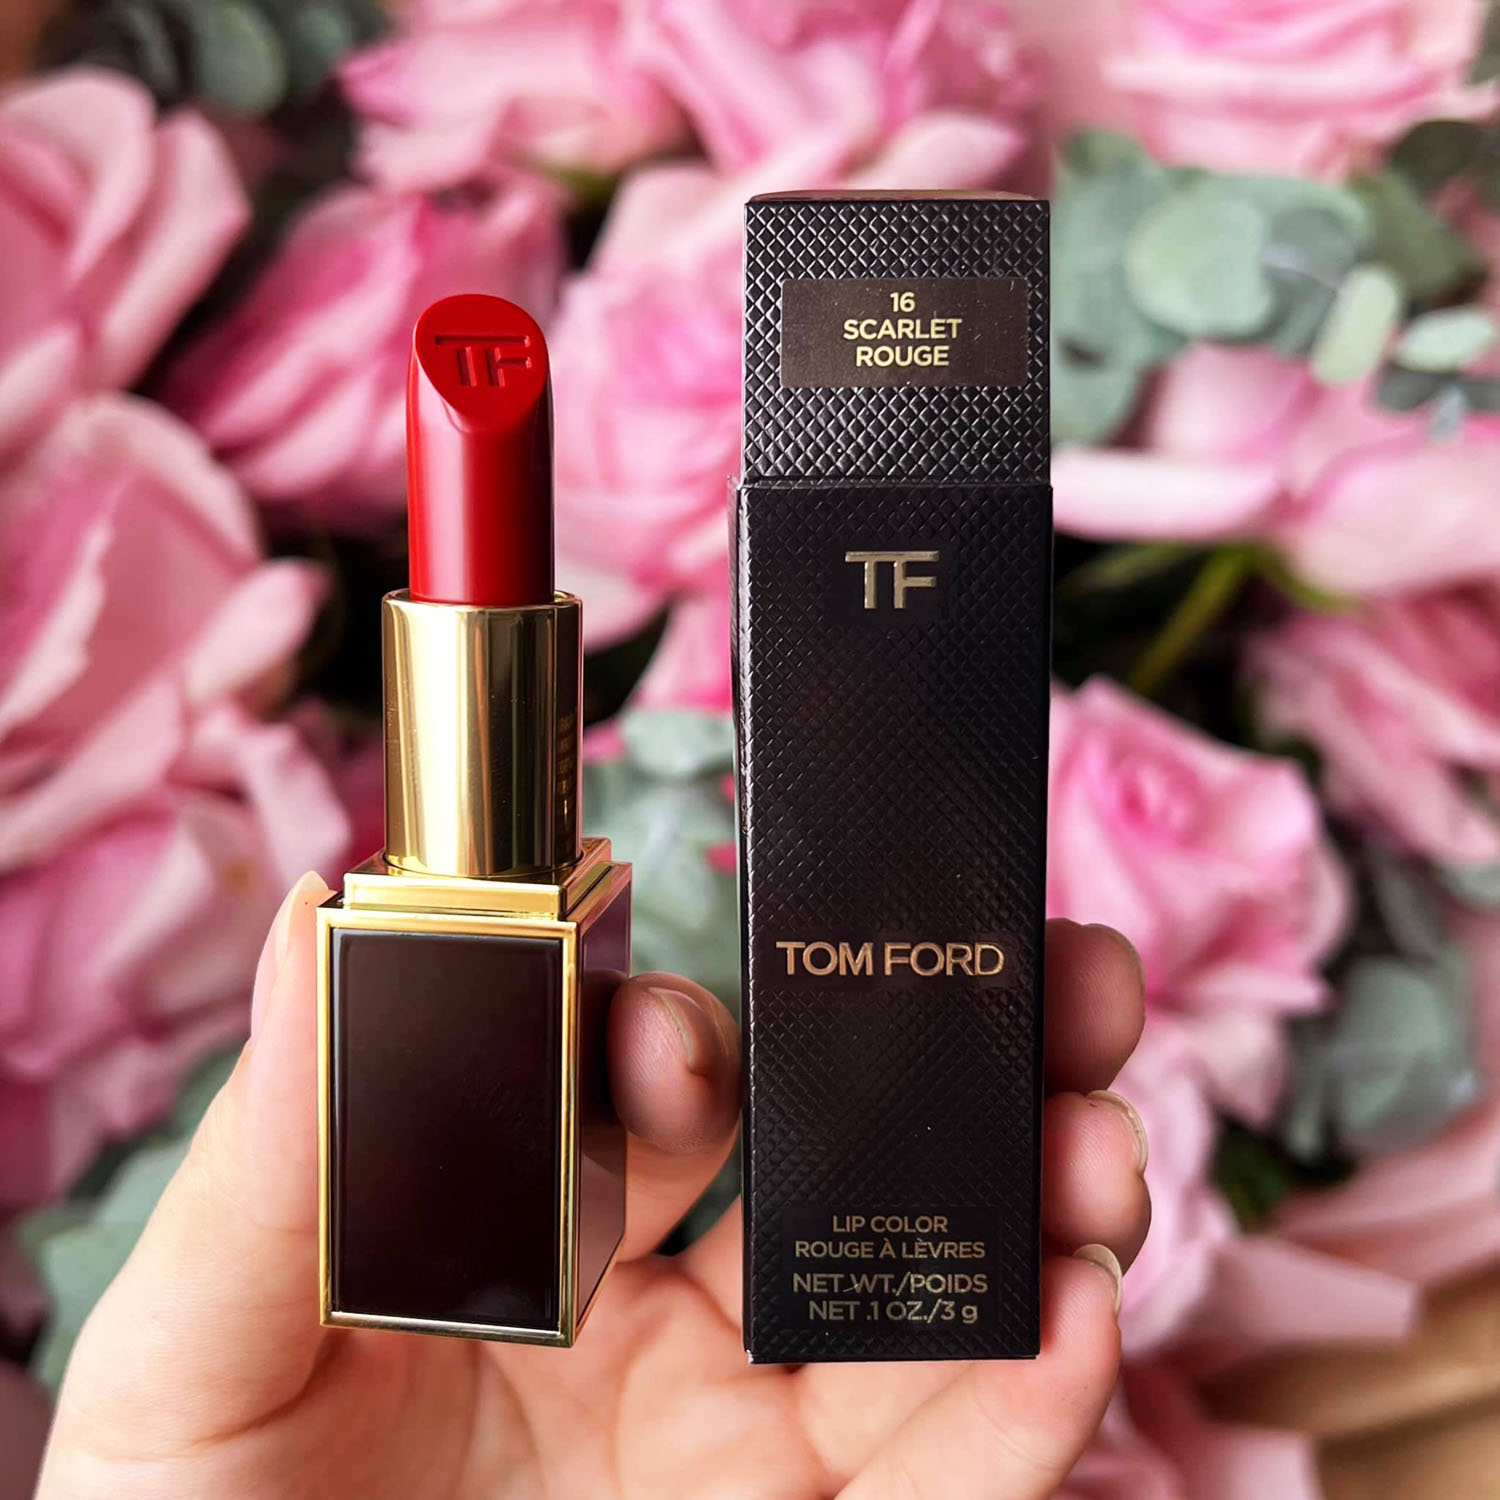 Tom Ford 16 Son Lì Scarlet Rouge Matte Lipstick Màu Đỏ Tươi